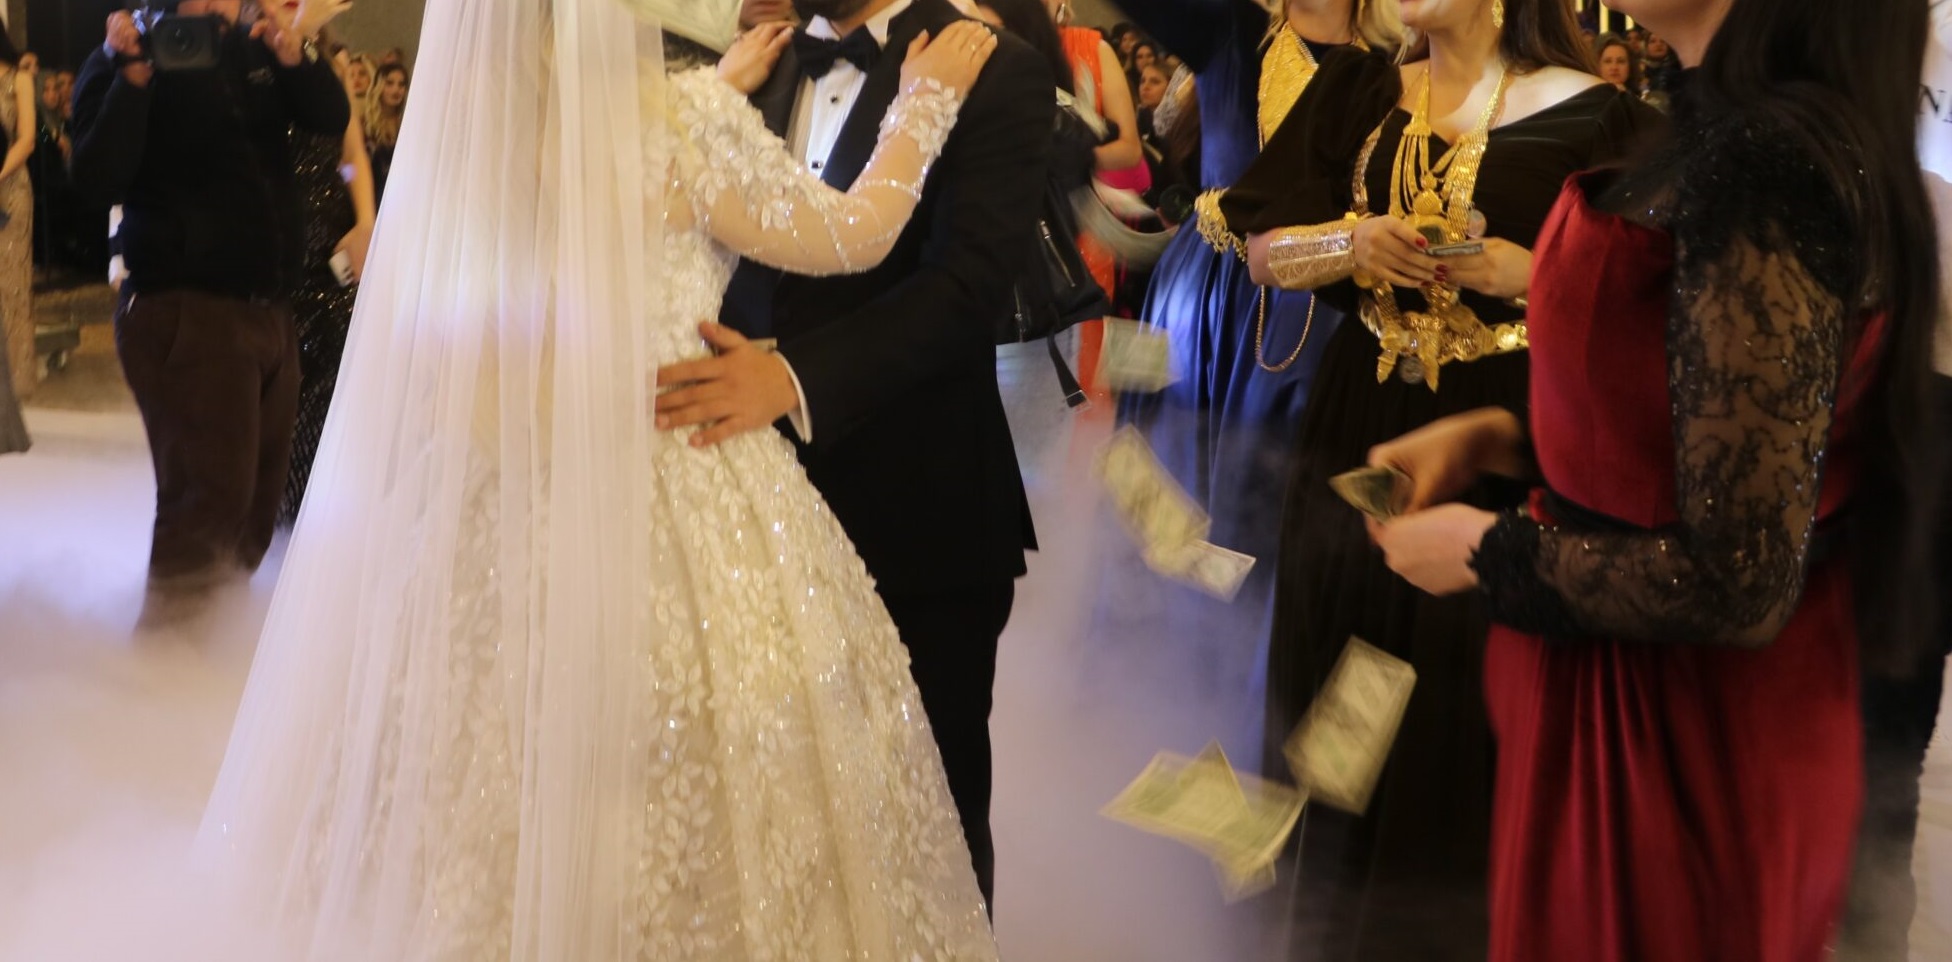 Diyarbakır’da Maliyetler Artarken Evlilik Hayalleri Gölgede Kalıyor: Gençler ve Esnaf Çare Bekliyor